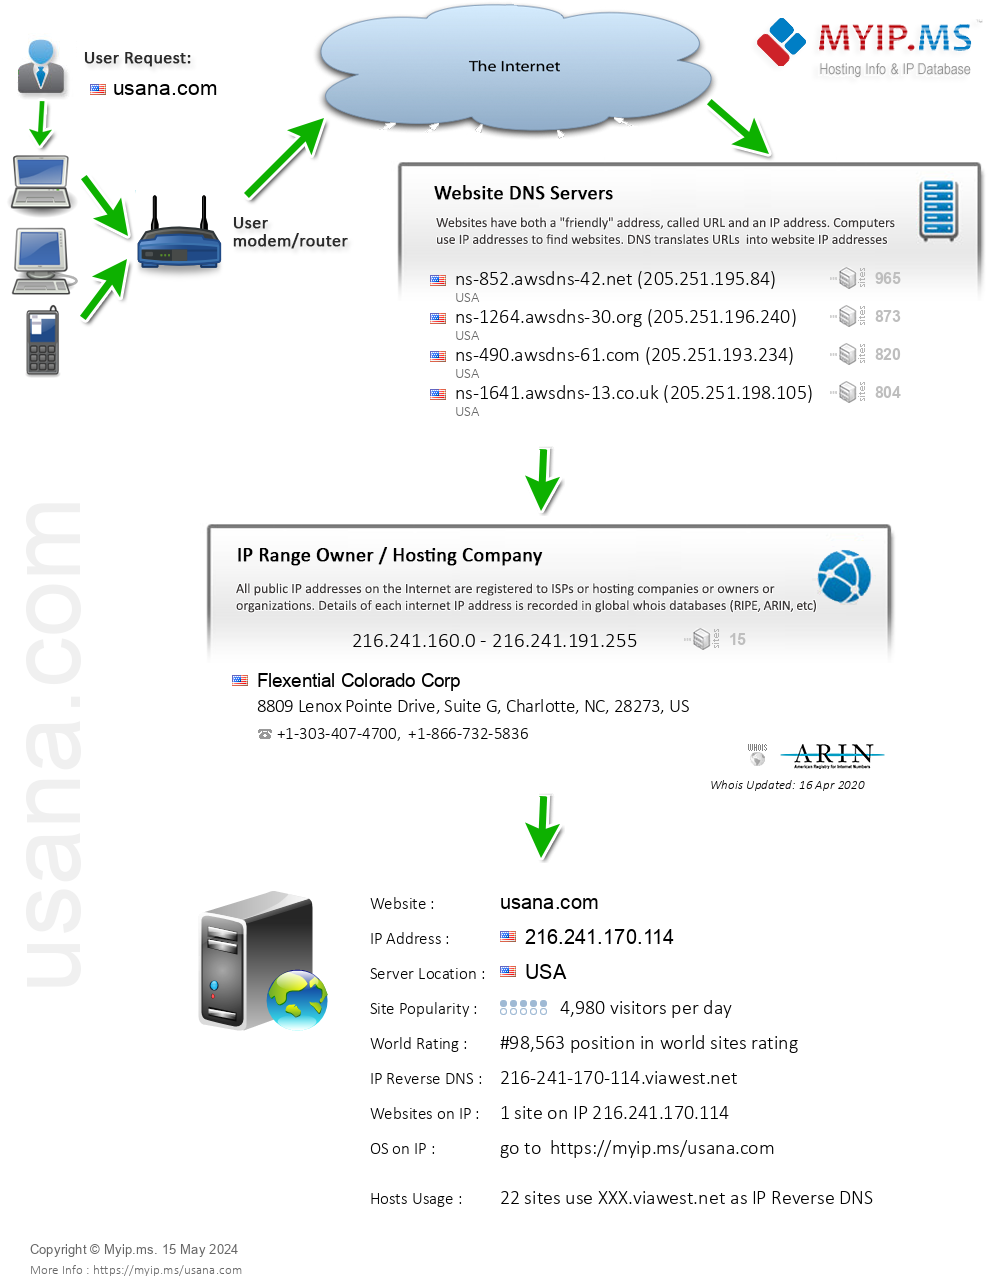 Usana.com - Website Hosting Visual IP Diagram